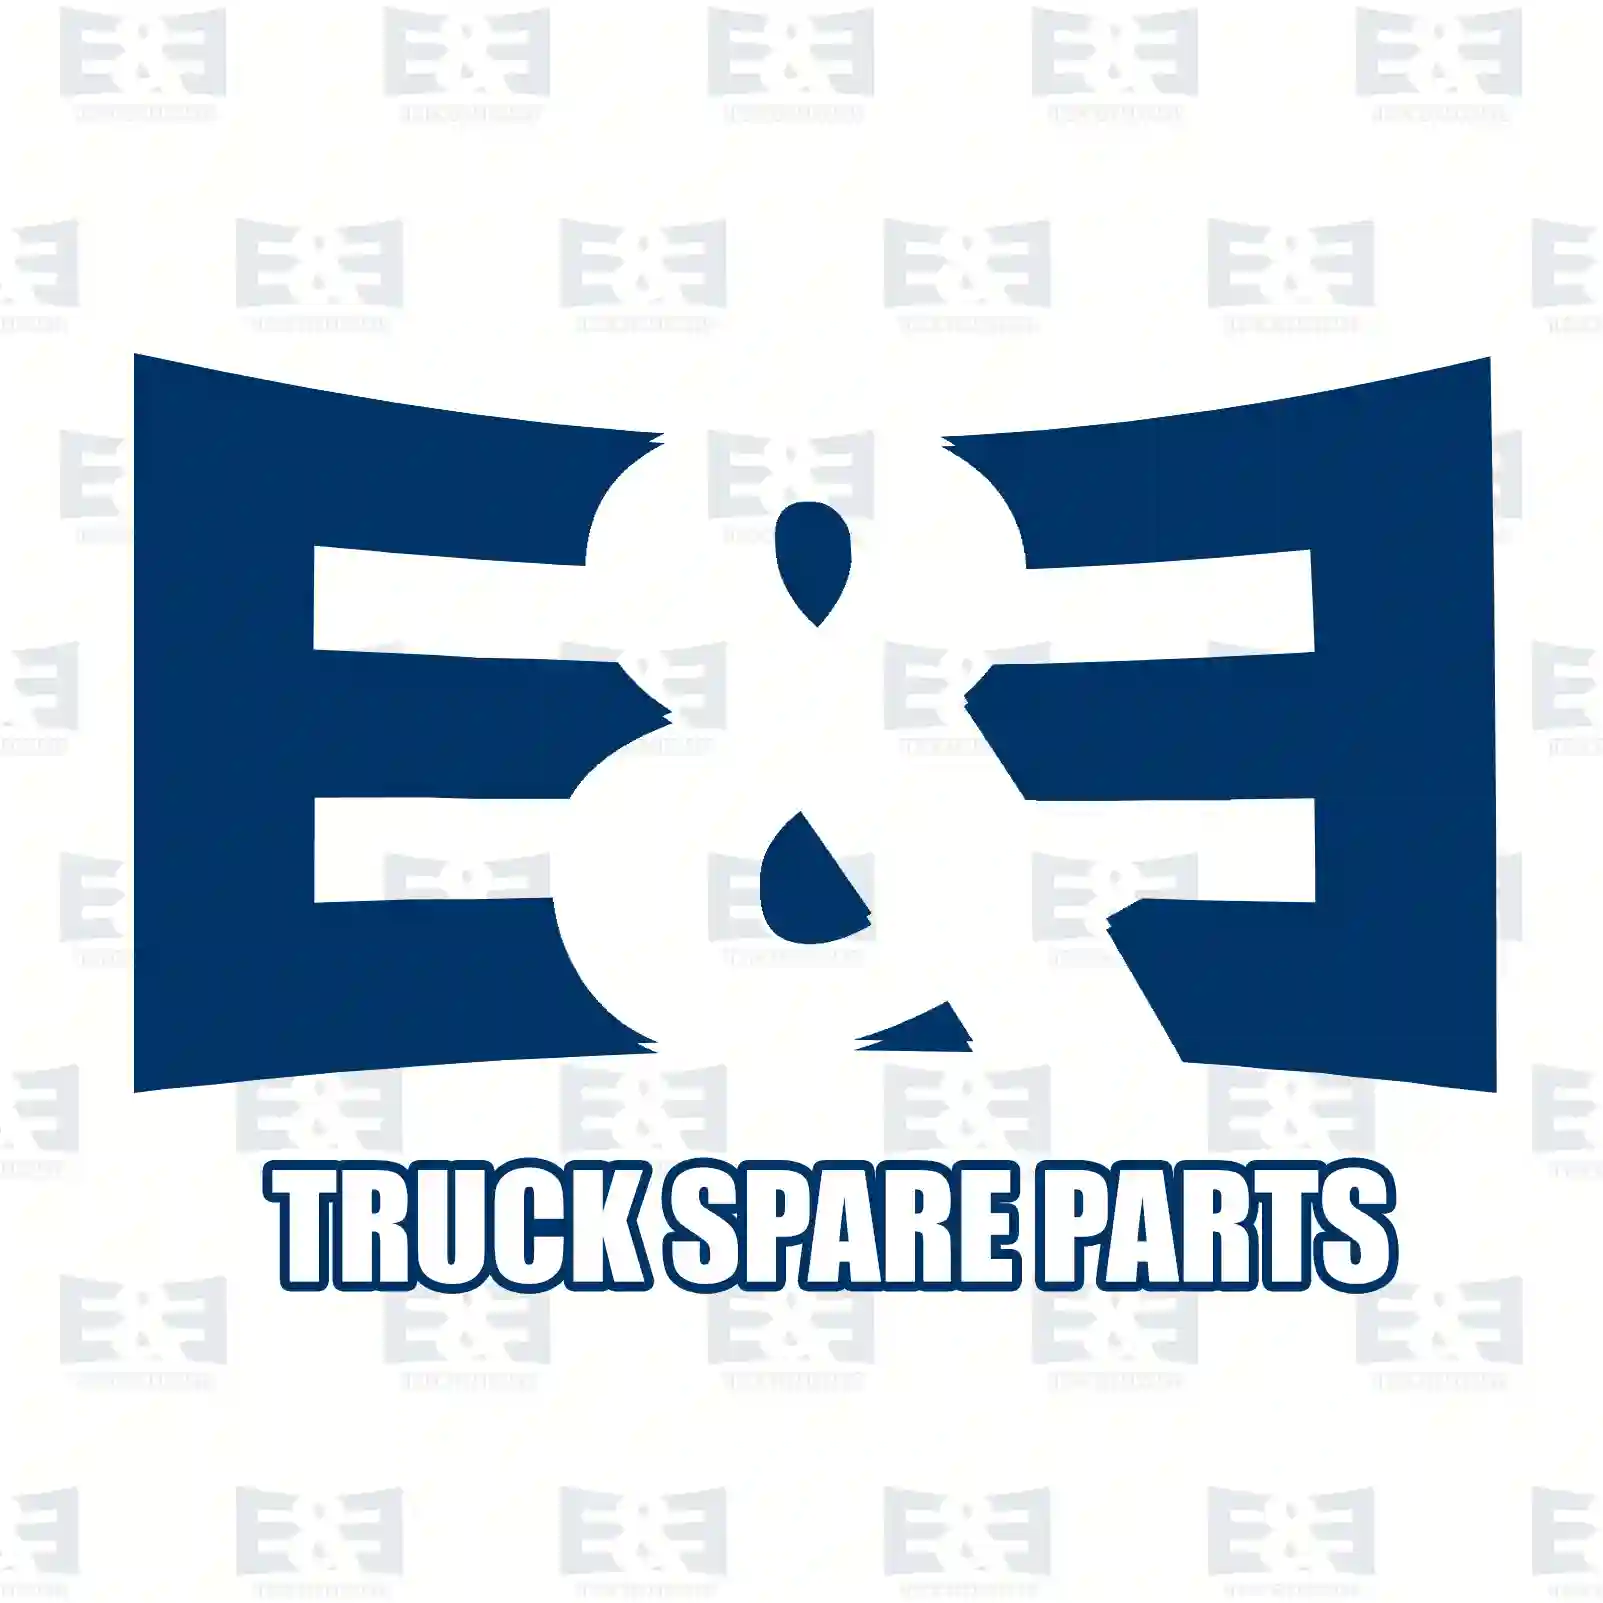 Bracket, shock absorber, 2E2283480, 41028124, 412719 ||  2E2283480 E&E Truck Spare Parts | Truck Spare Parts, Auotomotive Spare Parts Bracket, shock absorber, 2E2283480, 41028124, 412719 ||  2E2283480 E&E Truck Spare Parts | Truck Spare Parts, Auotomotive Spare Parts